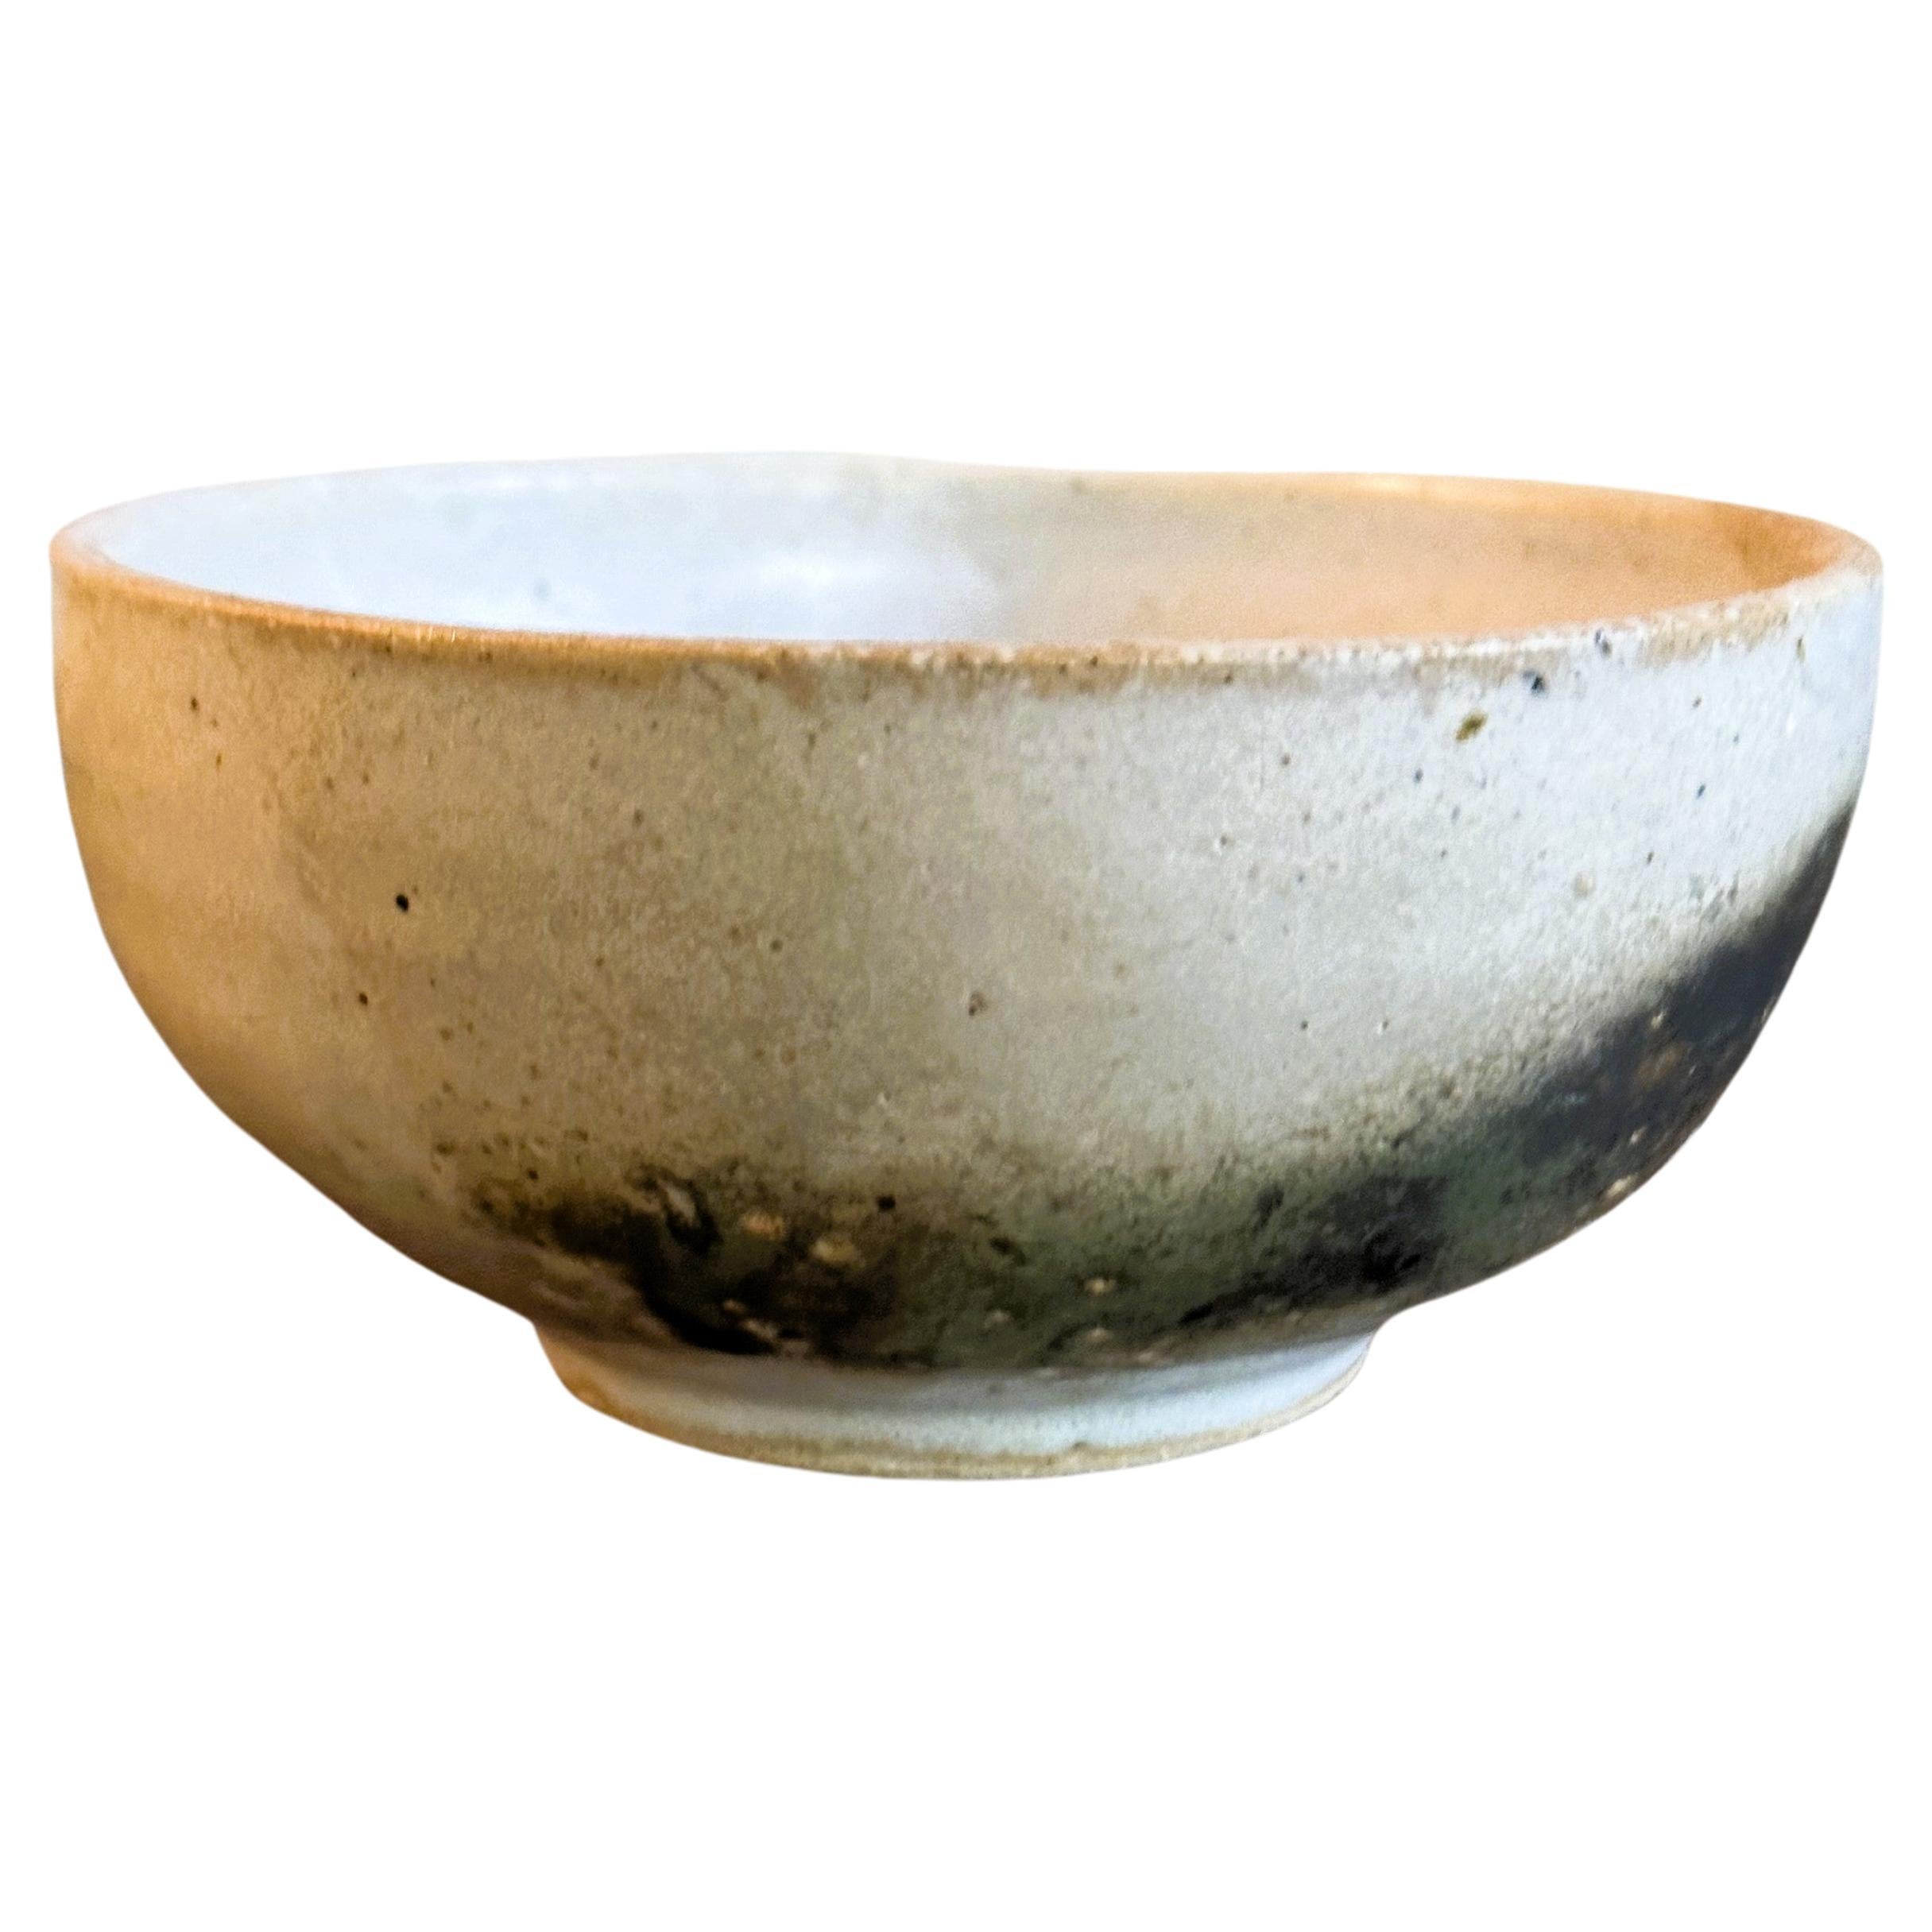 Glazed Ceramic Chawan Tea Bowl by Toshiko Takaezu